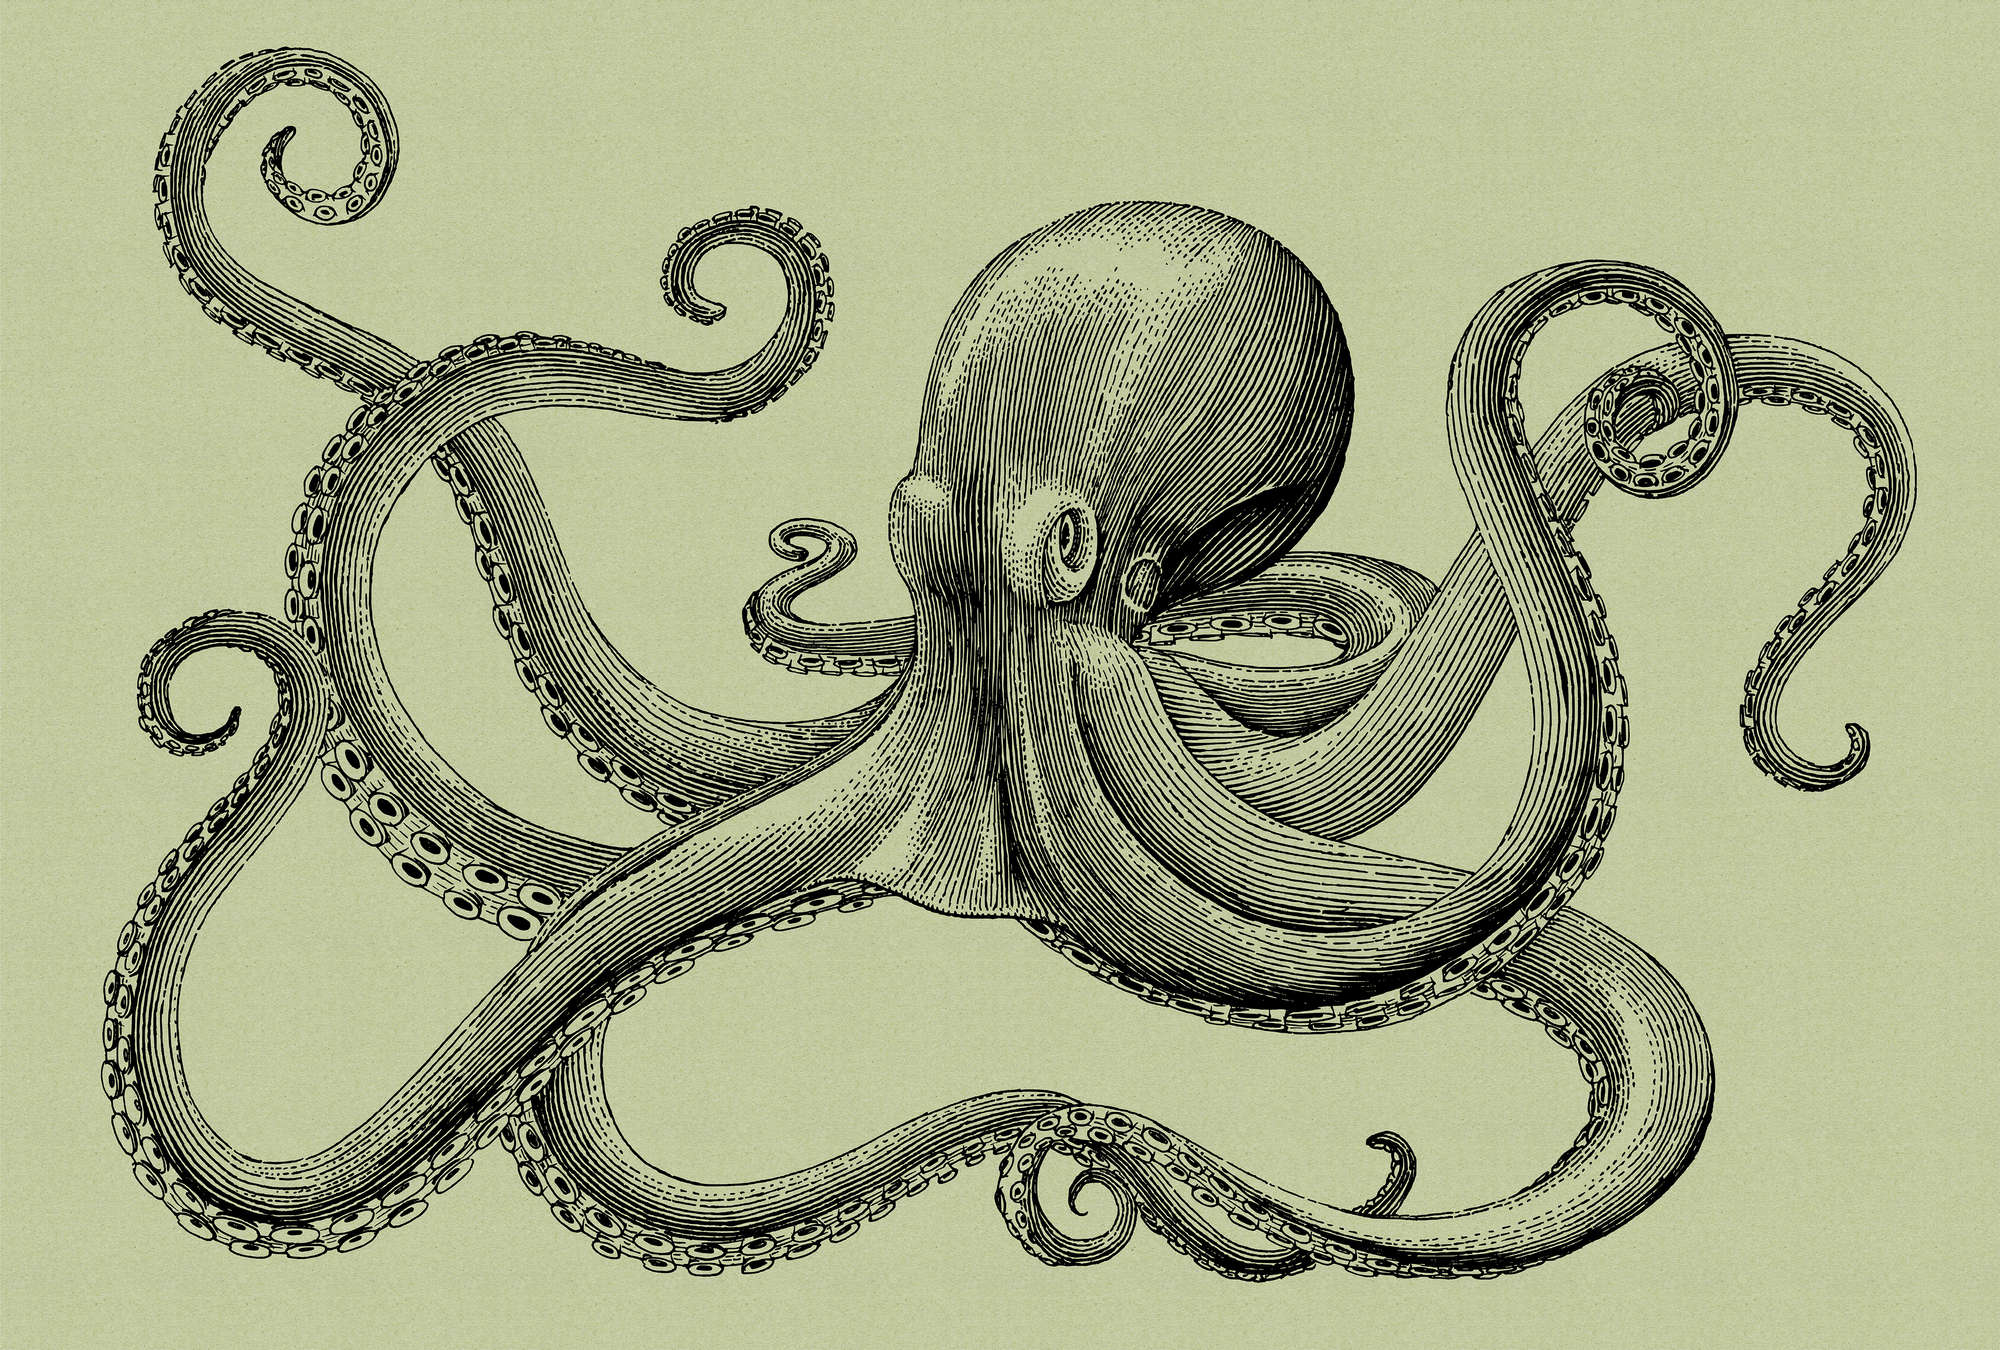             Jules 3 - Octopus Onderlaag behang Schetsstijl & Vintage Look - Karton Textuur - Groen, Zwart | Matte Gladde Vlieseline
        